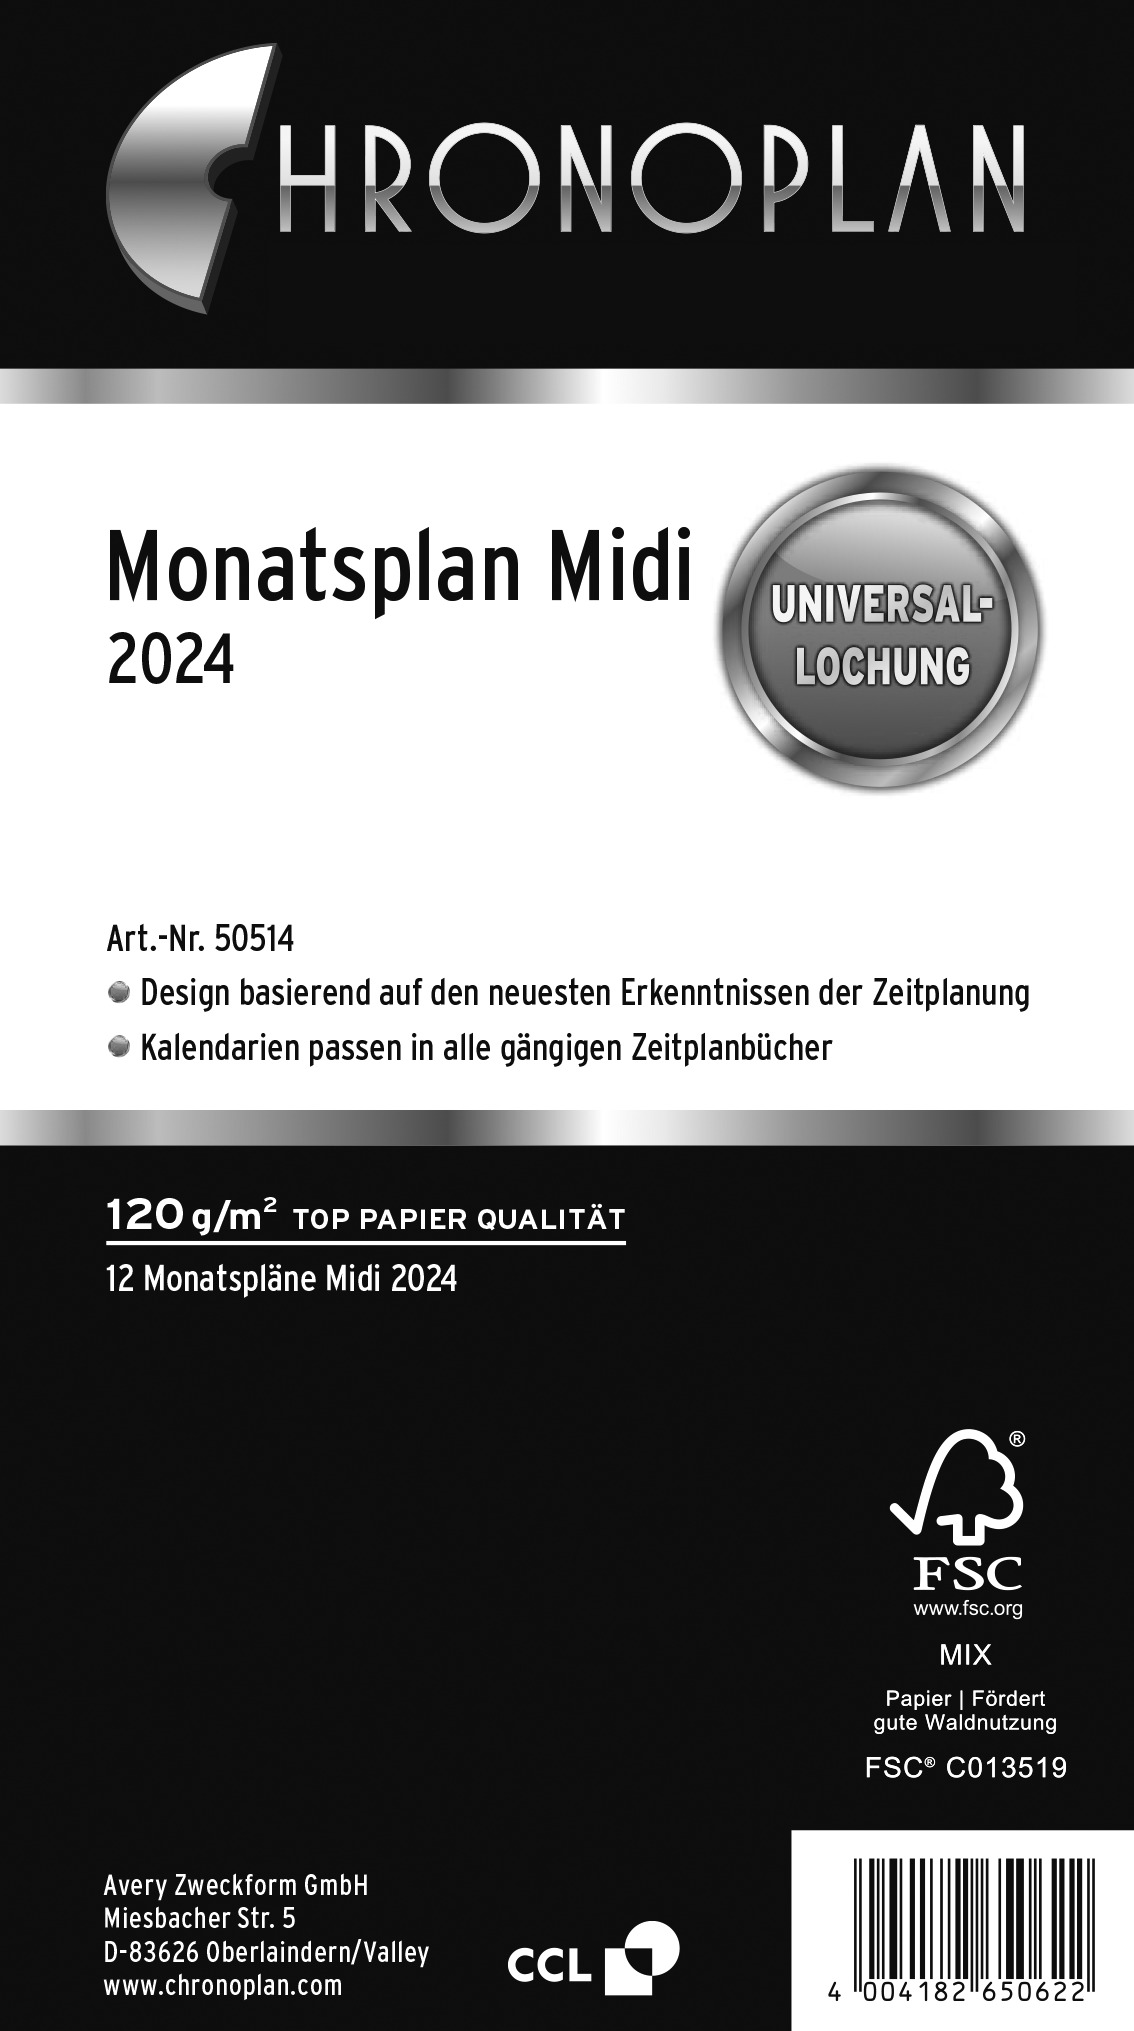 Monatsplan Midi 2024 CHRONOPLAN 50514 RR